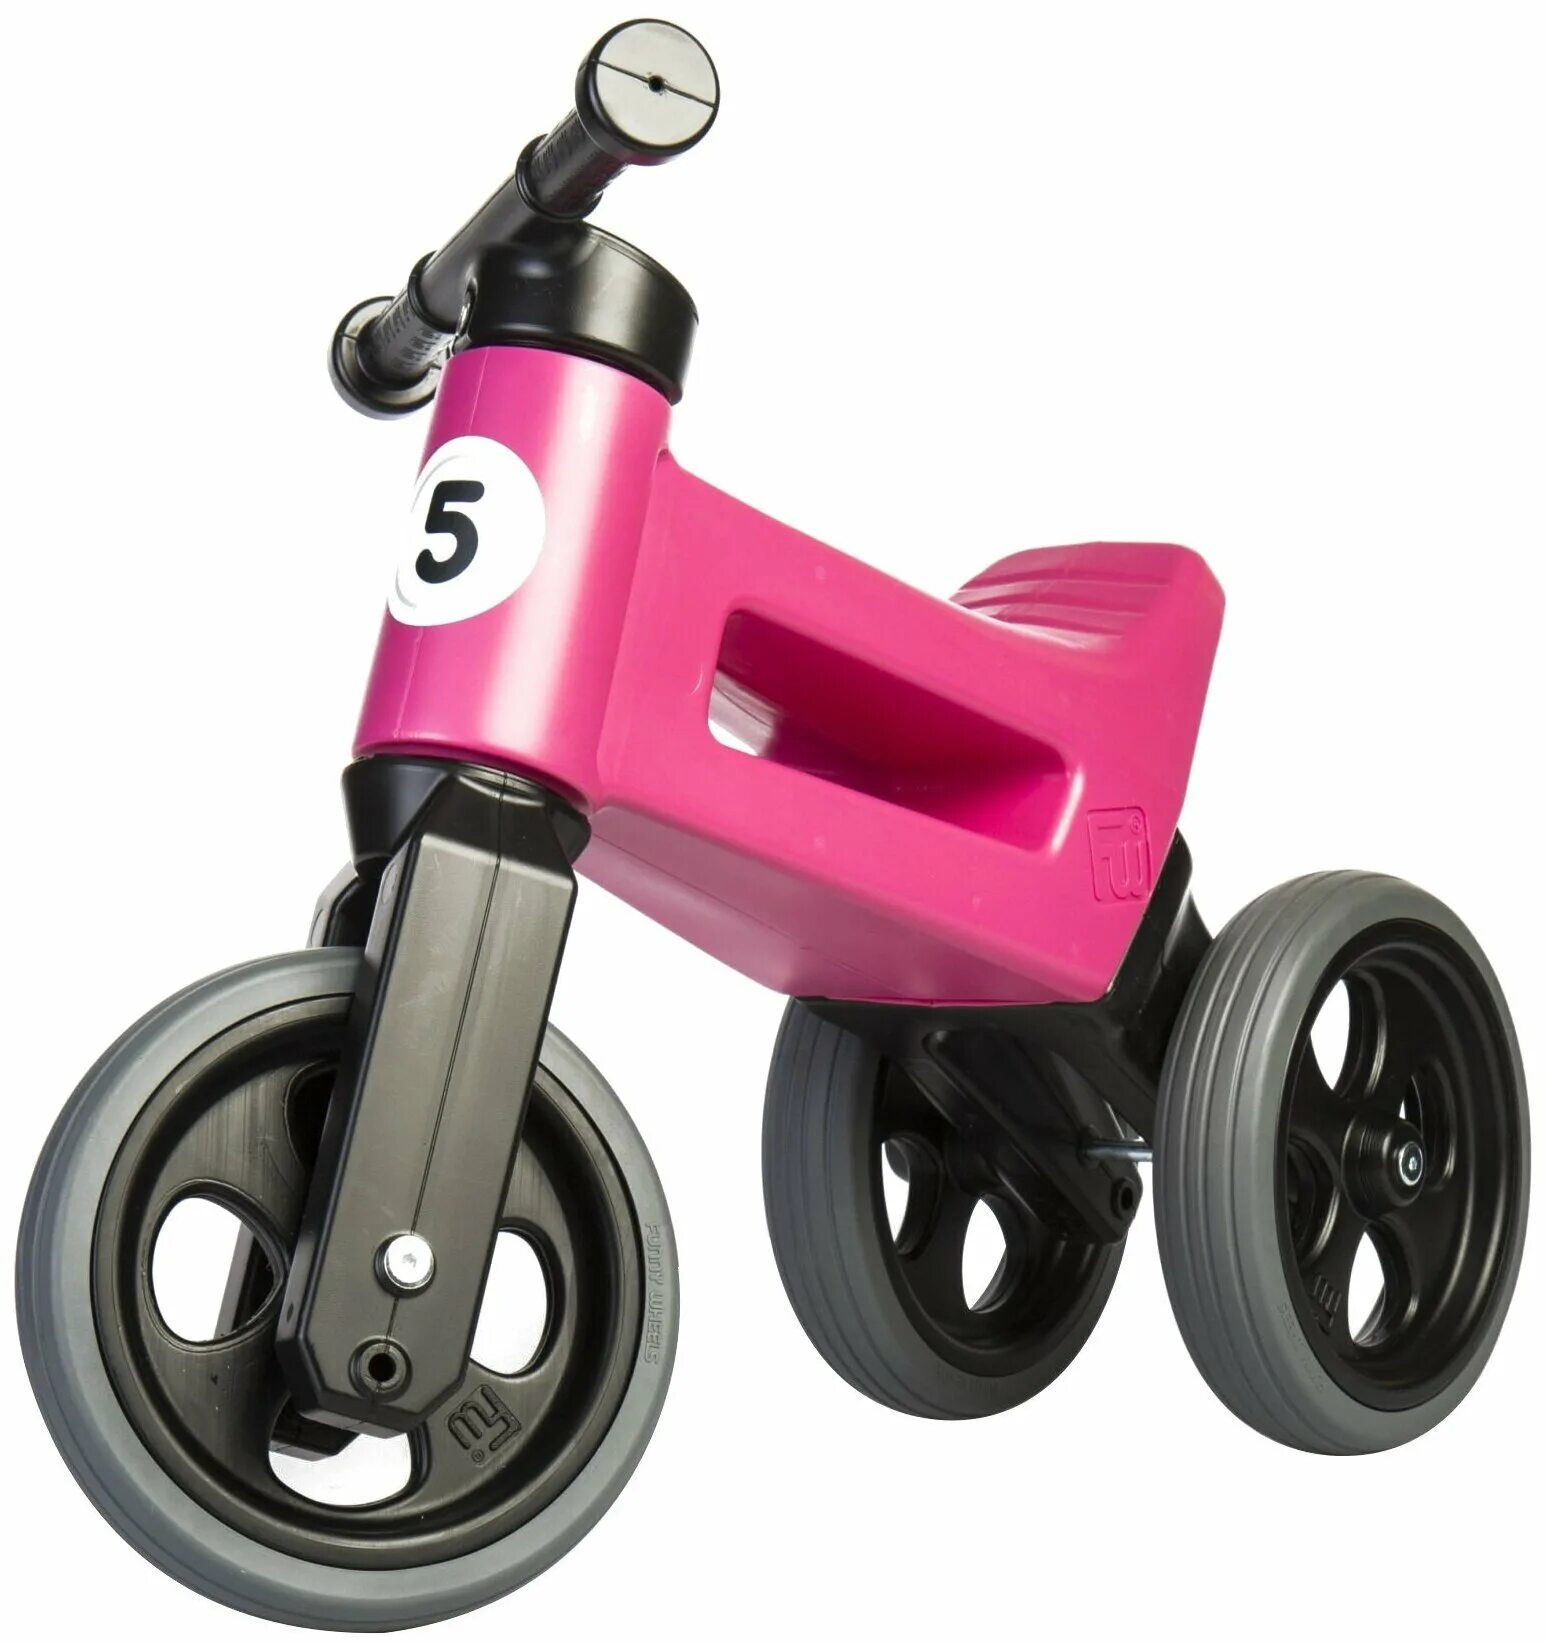 Купить беговел для детей от 2 лет. Беговел funny Wheels Rider. Беговел funny Wheels Rider Sport. Беговел Kandor simply. FW Rider беговел.